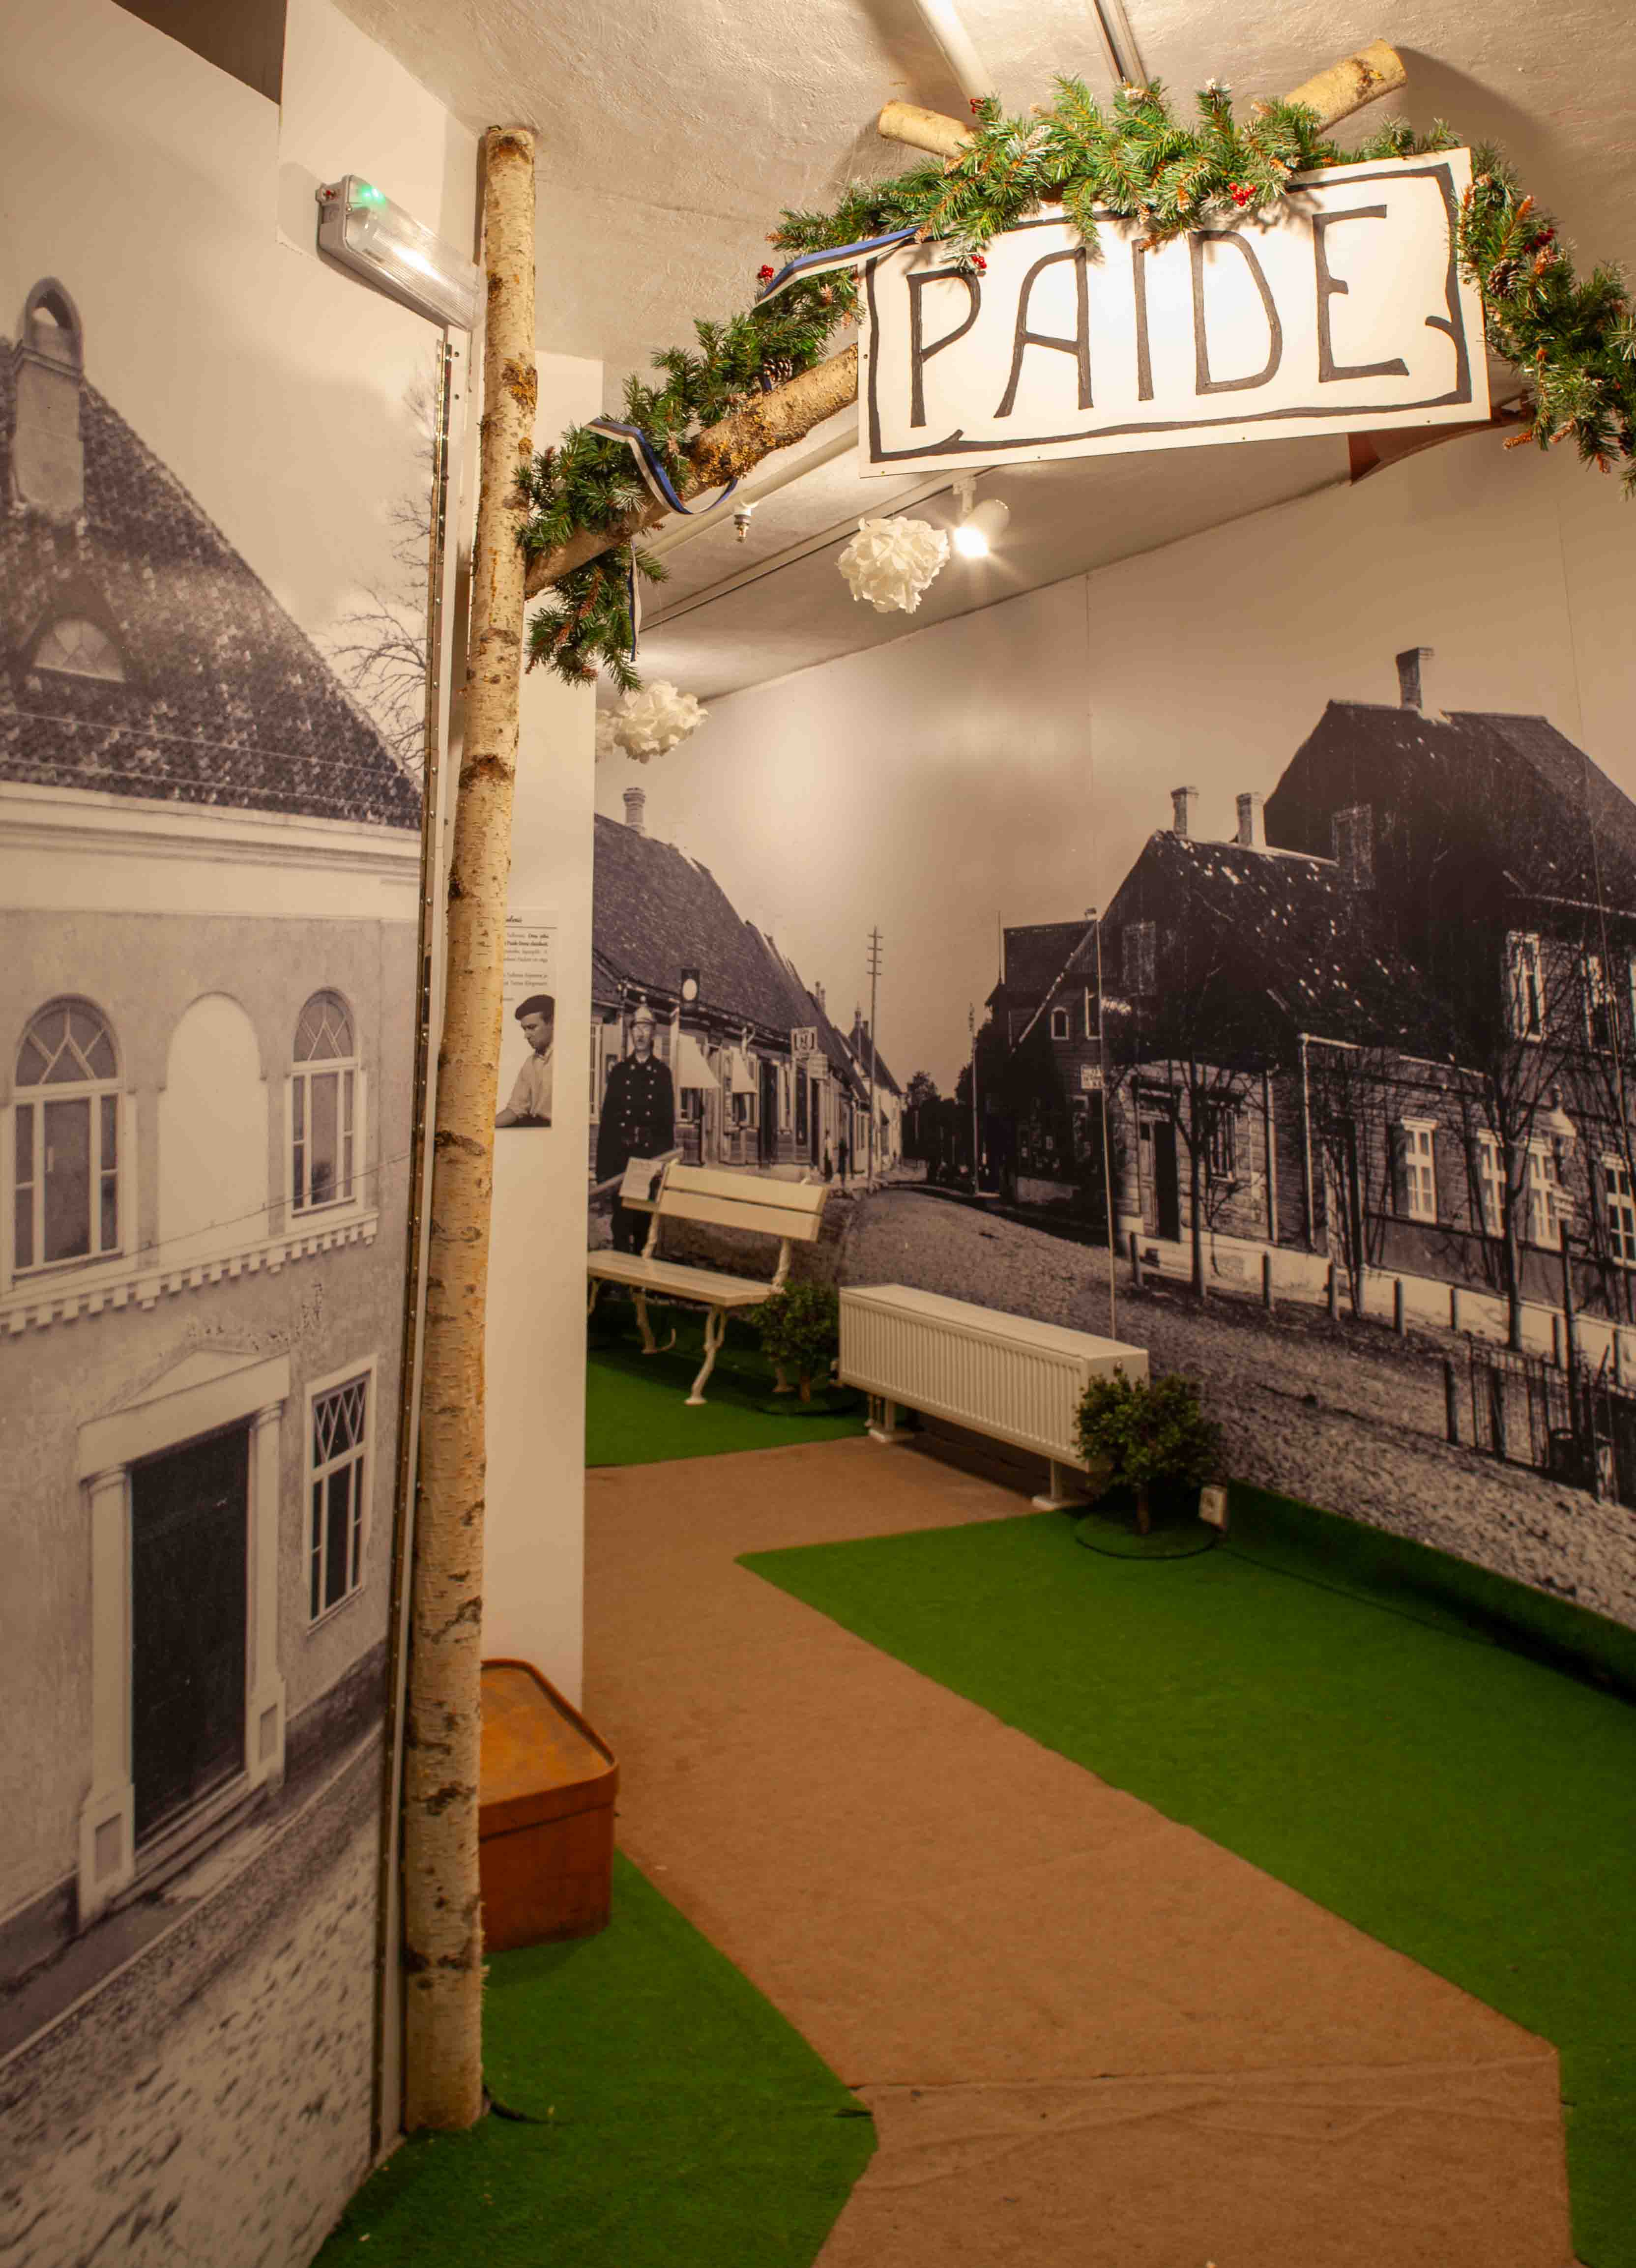 Fotografia przedstawiająca Paide w Estonii